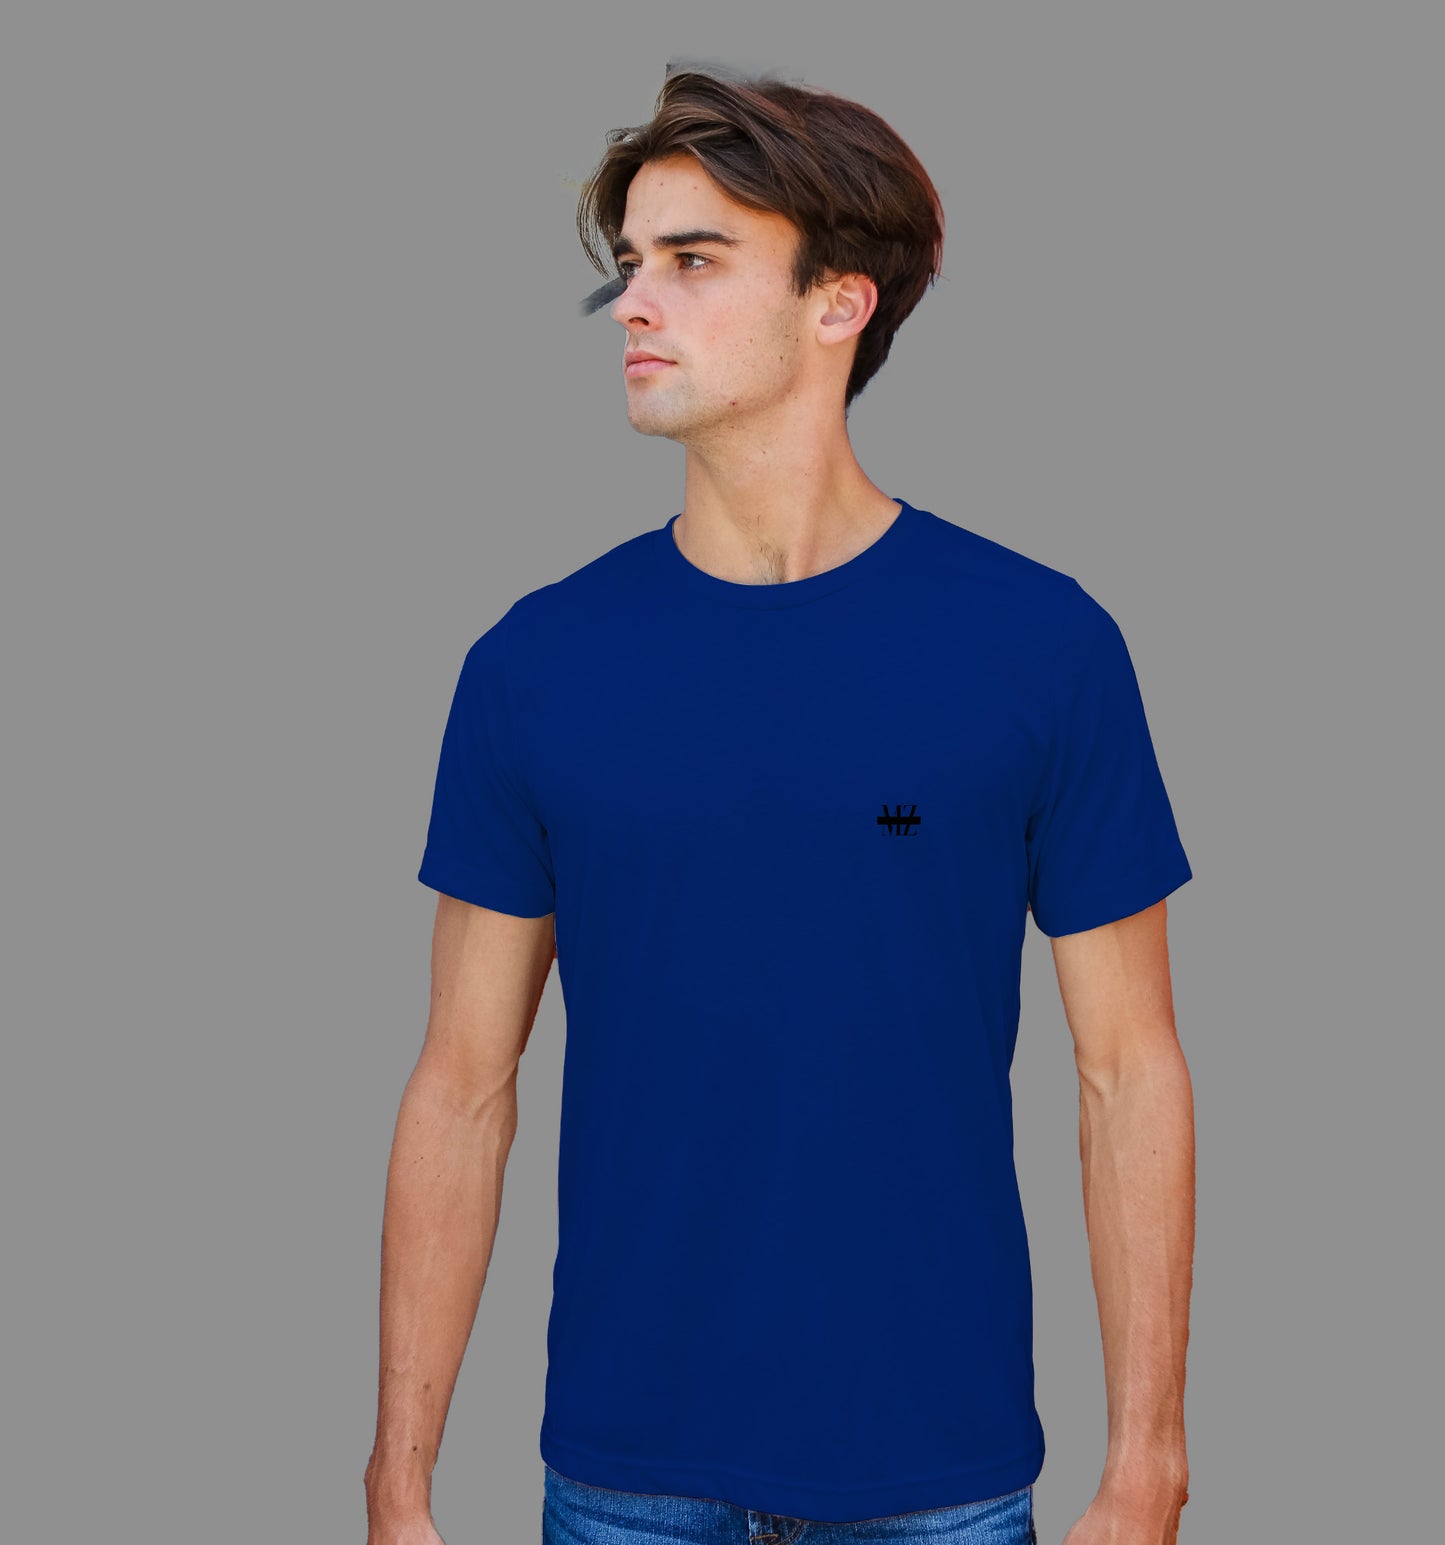 Navy Blue T-Shirt In Plain - Mon Zurich Originals